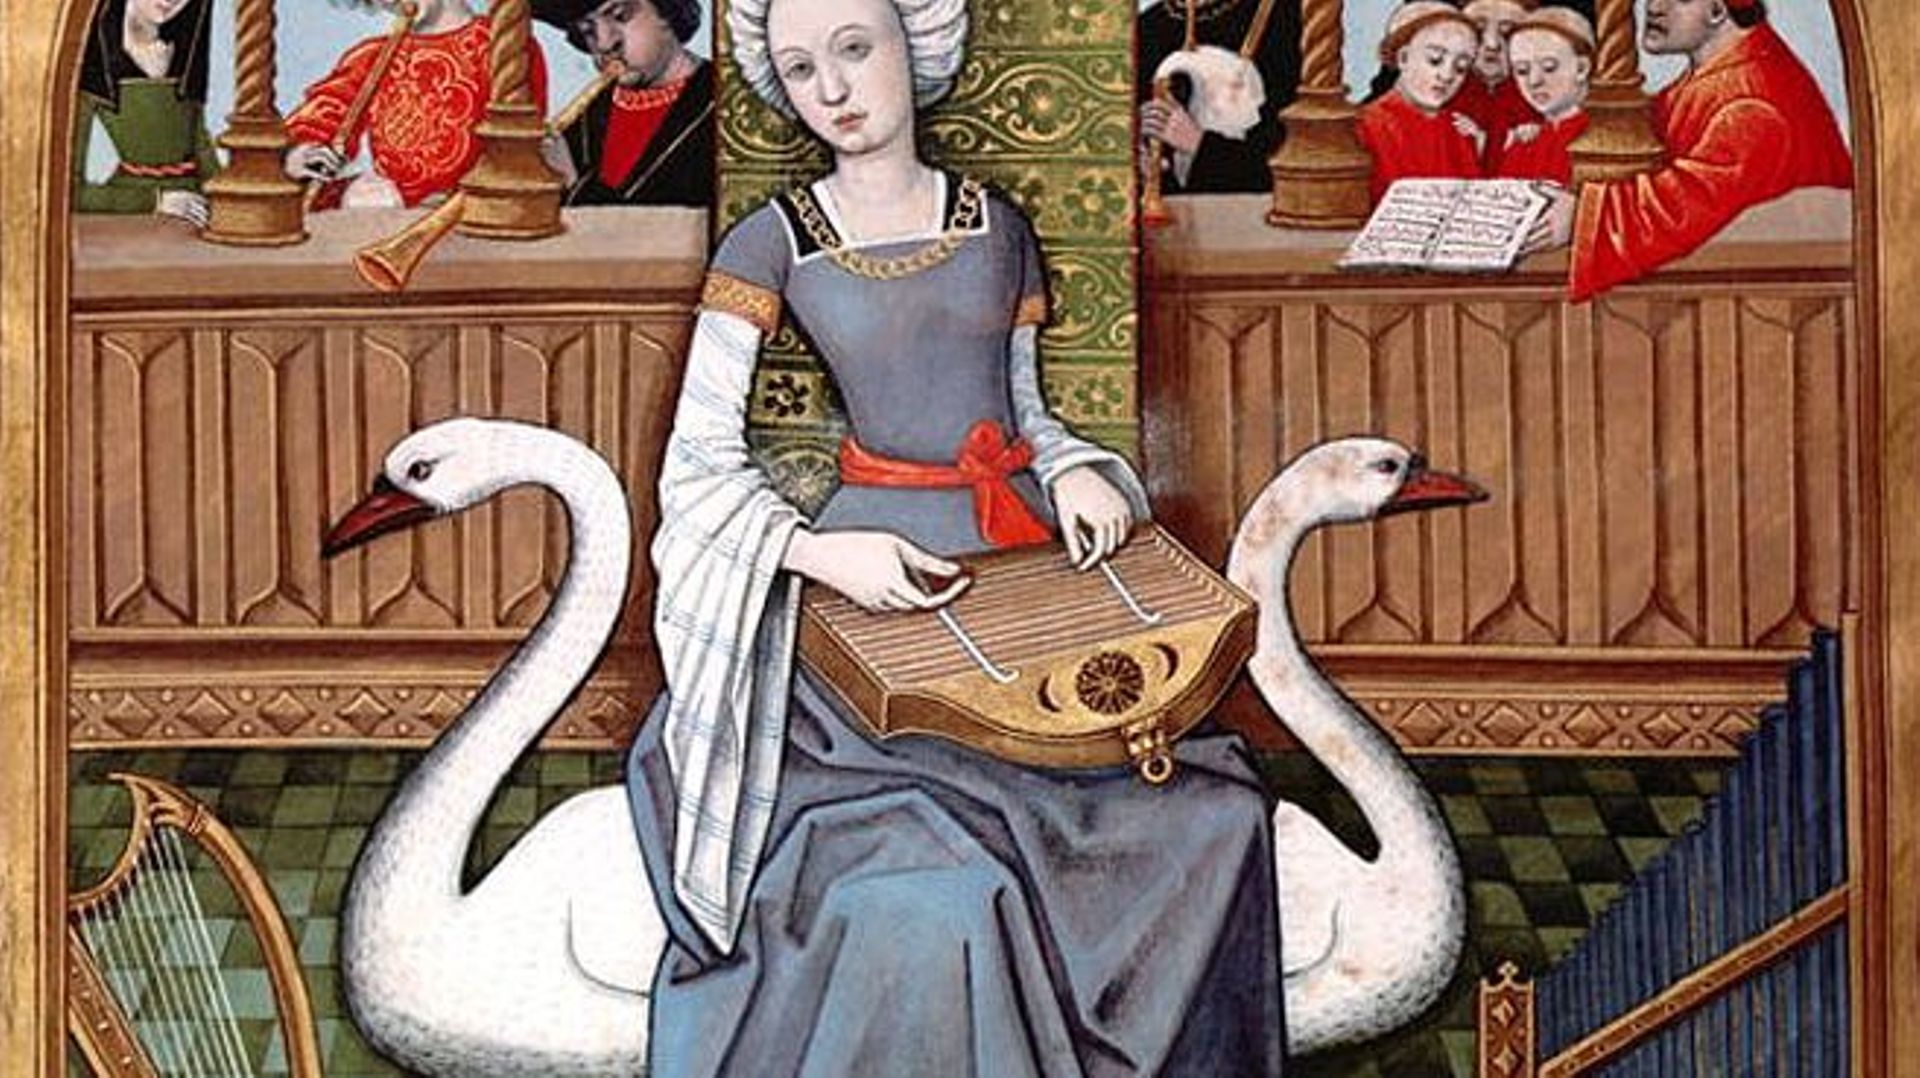 Joueuse de dulcimer, ancêtre notamment du cymbalum
Robinet Testard, « Allégorie de l’Amour », Livre des échecs amoureux d’Evrard de Conty, 1496-1498, folio 65 verso, BNF